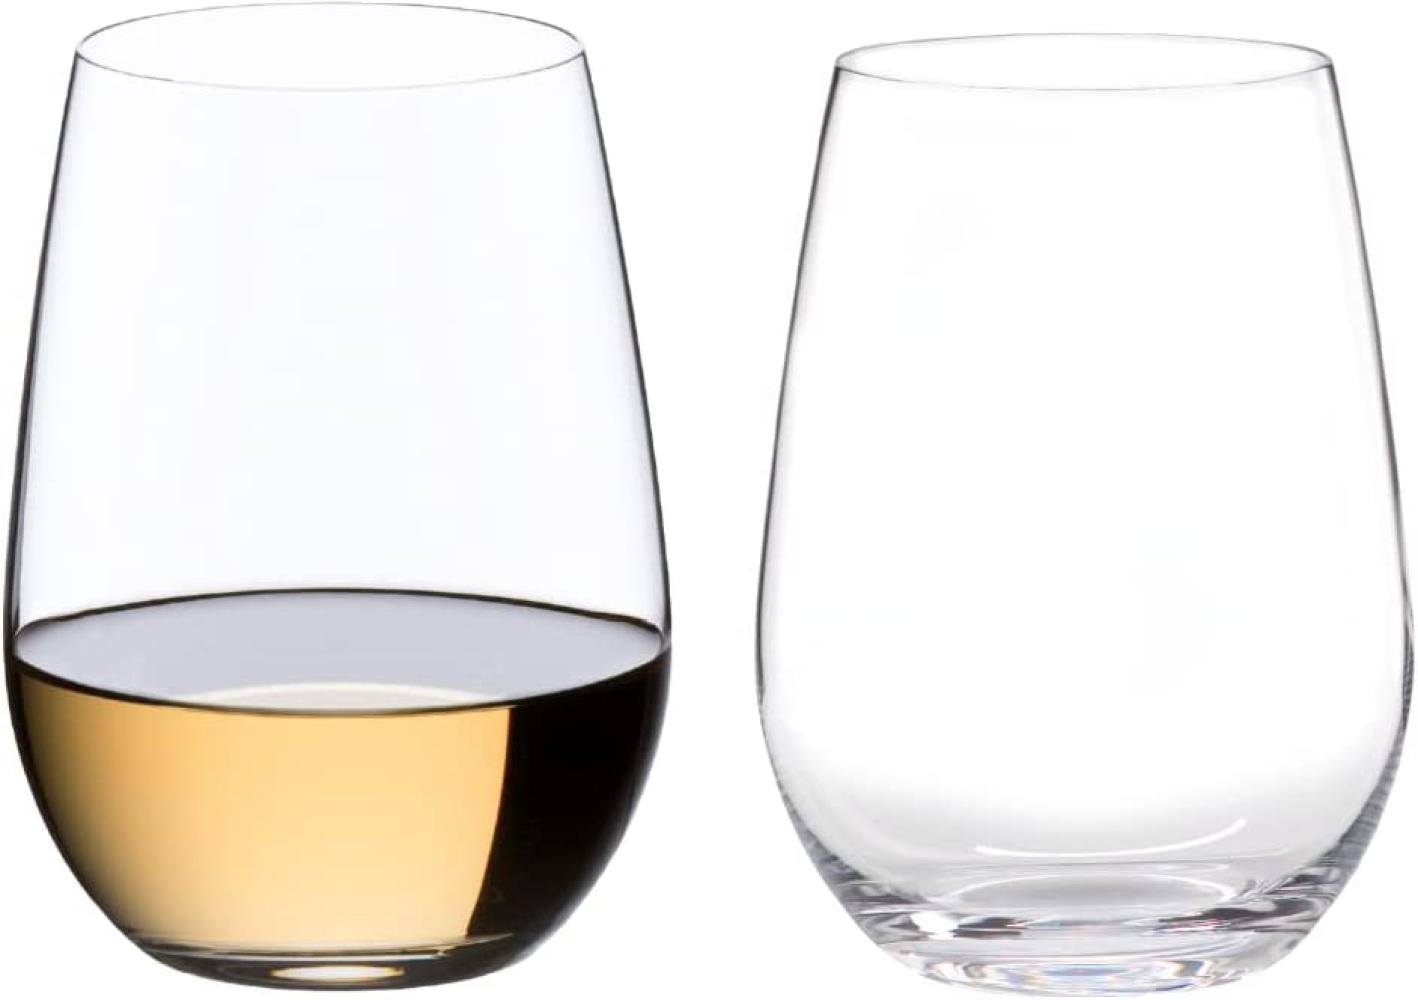 Riedel O Riesling / Sauvignon Blanc, Weißweinglas, Weinglas, hochwertiges Glas, 375 ml, 2er Set, 0414/15 Bild 1